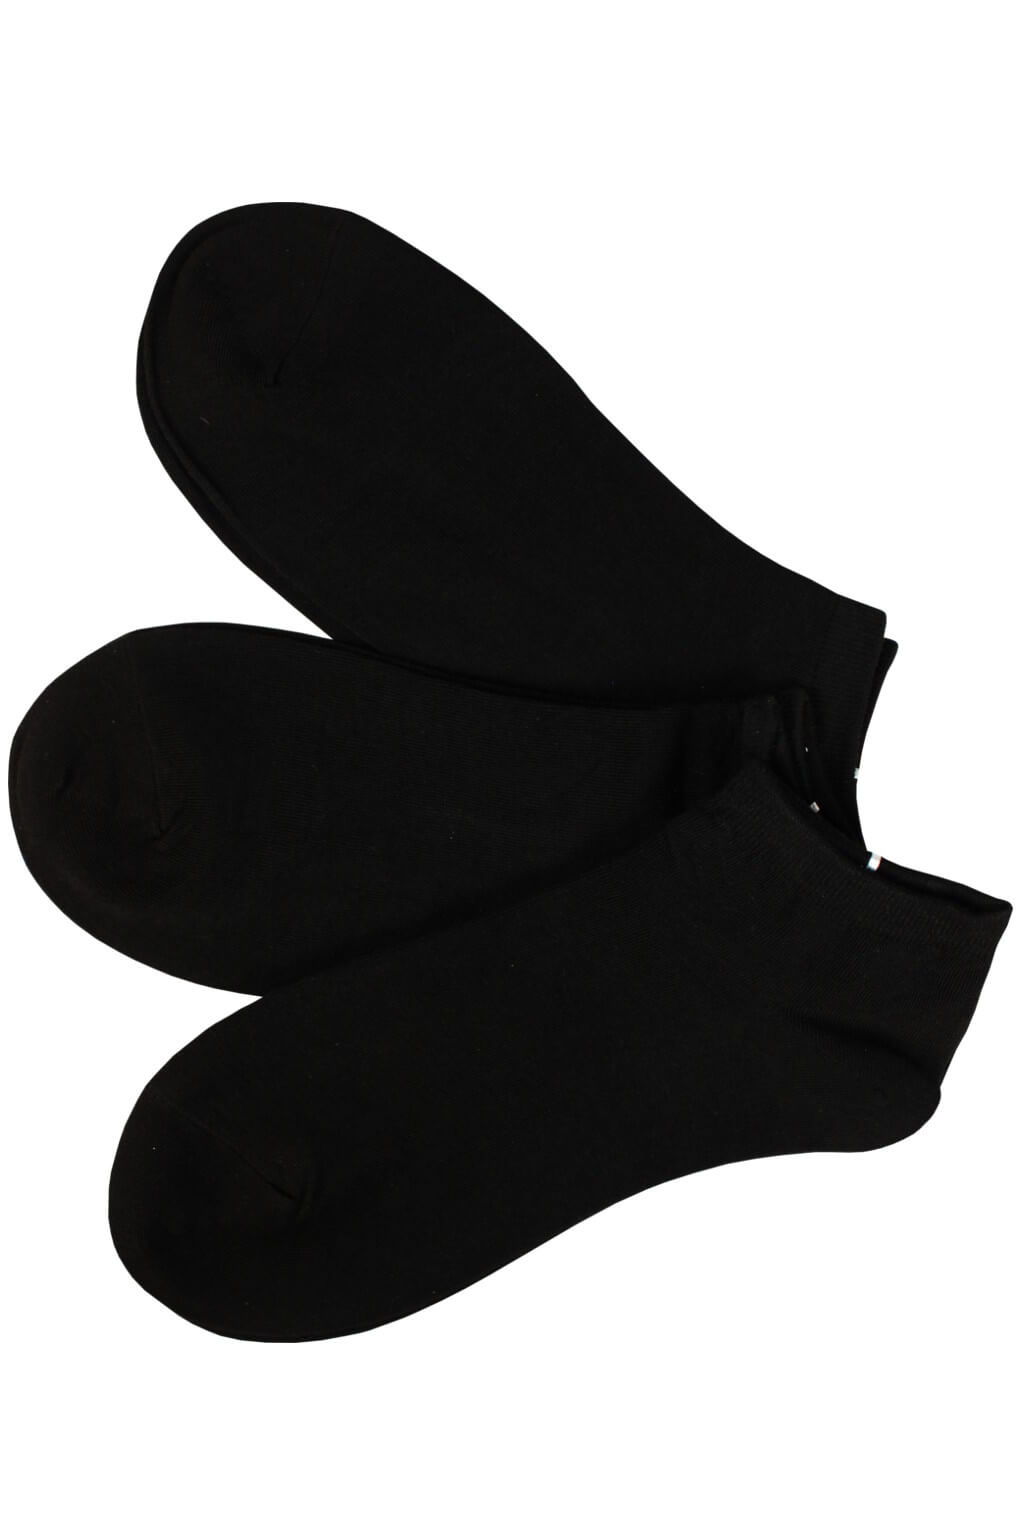 Dámské kotníčkové ponožky bavlna CW349 -3 bal 35-38 černá